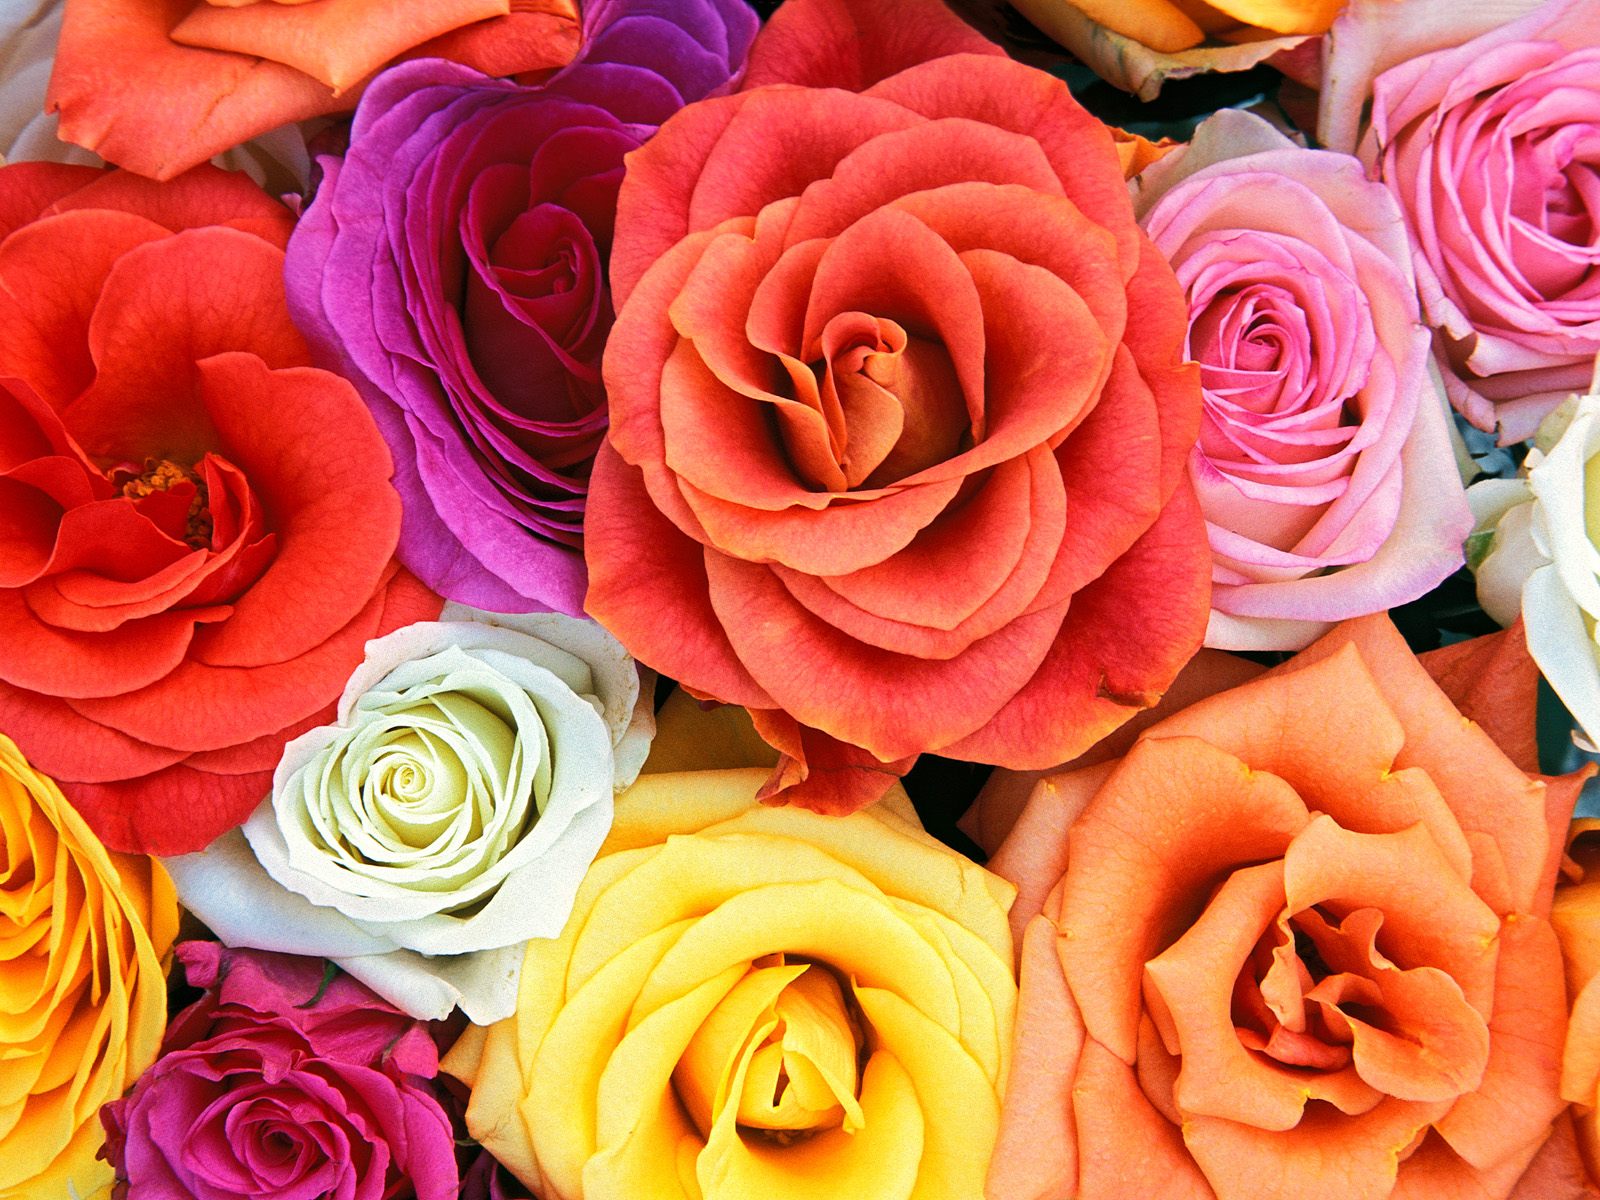 Imagenes De Rosas De Todo Color - Fotos de rosas de colores YouTube